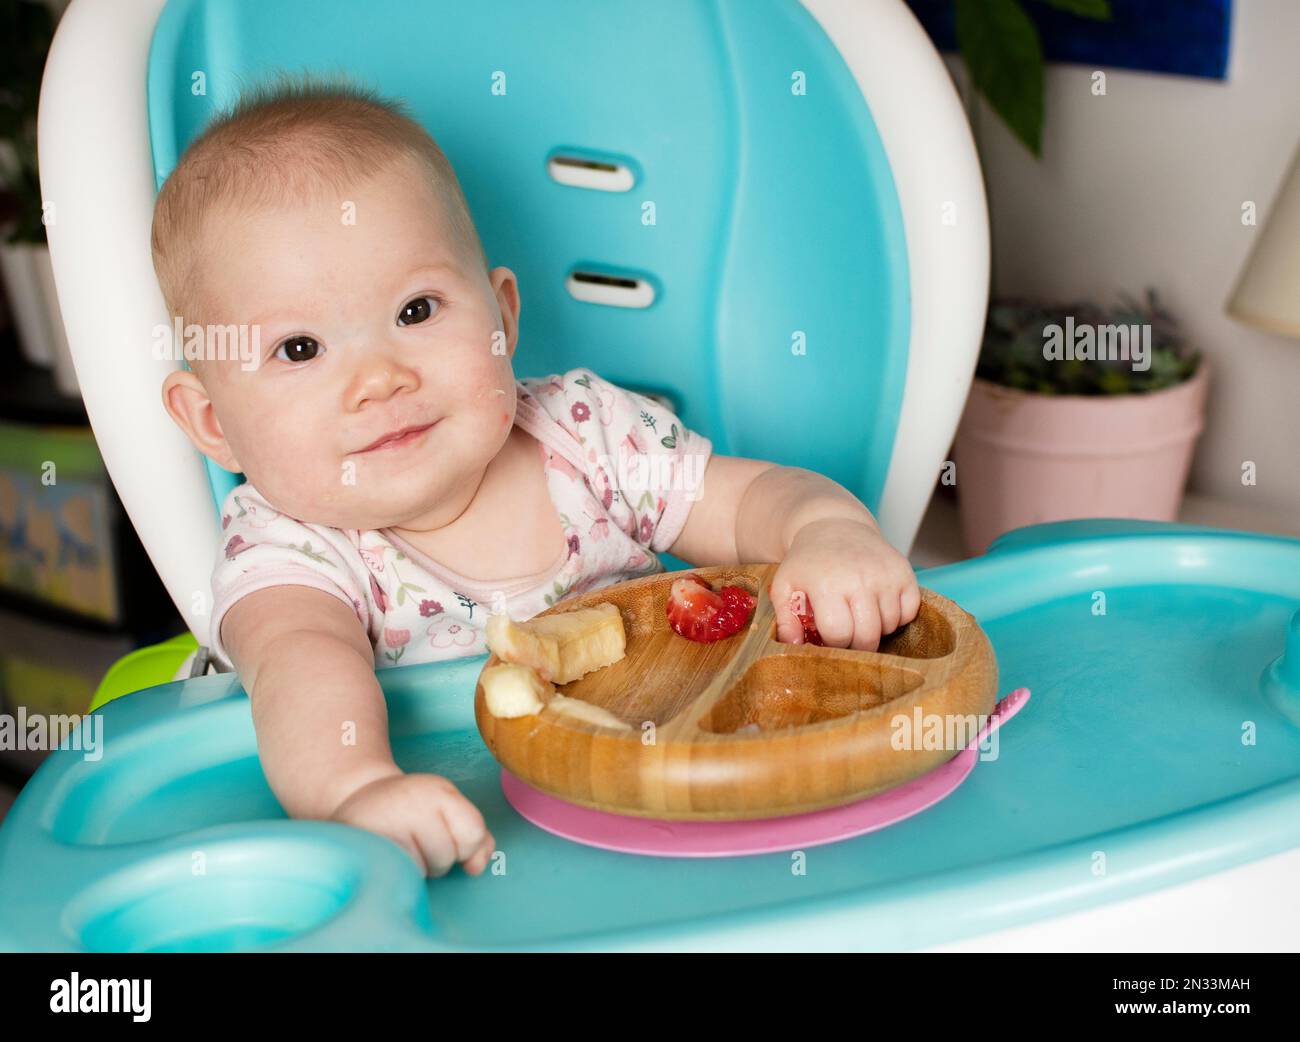 Bébé mangeant du brocoli. Sevrage de bébé. Sevrage. Une alimentation saine. Petite fille caucasienne assise dans une chaise haute et mangeant son déjeuner Banque D'Images